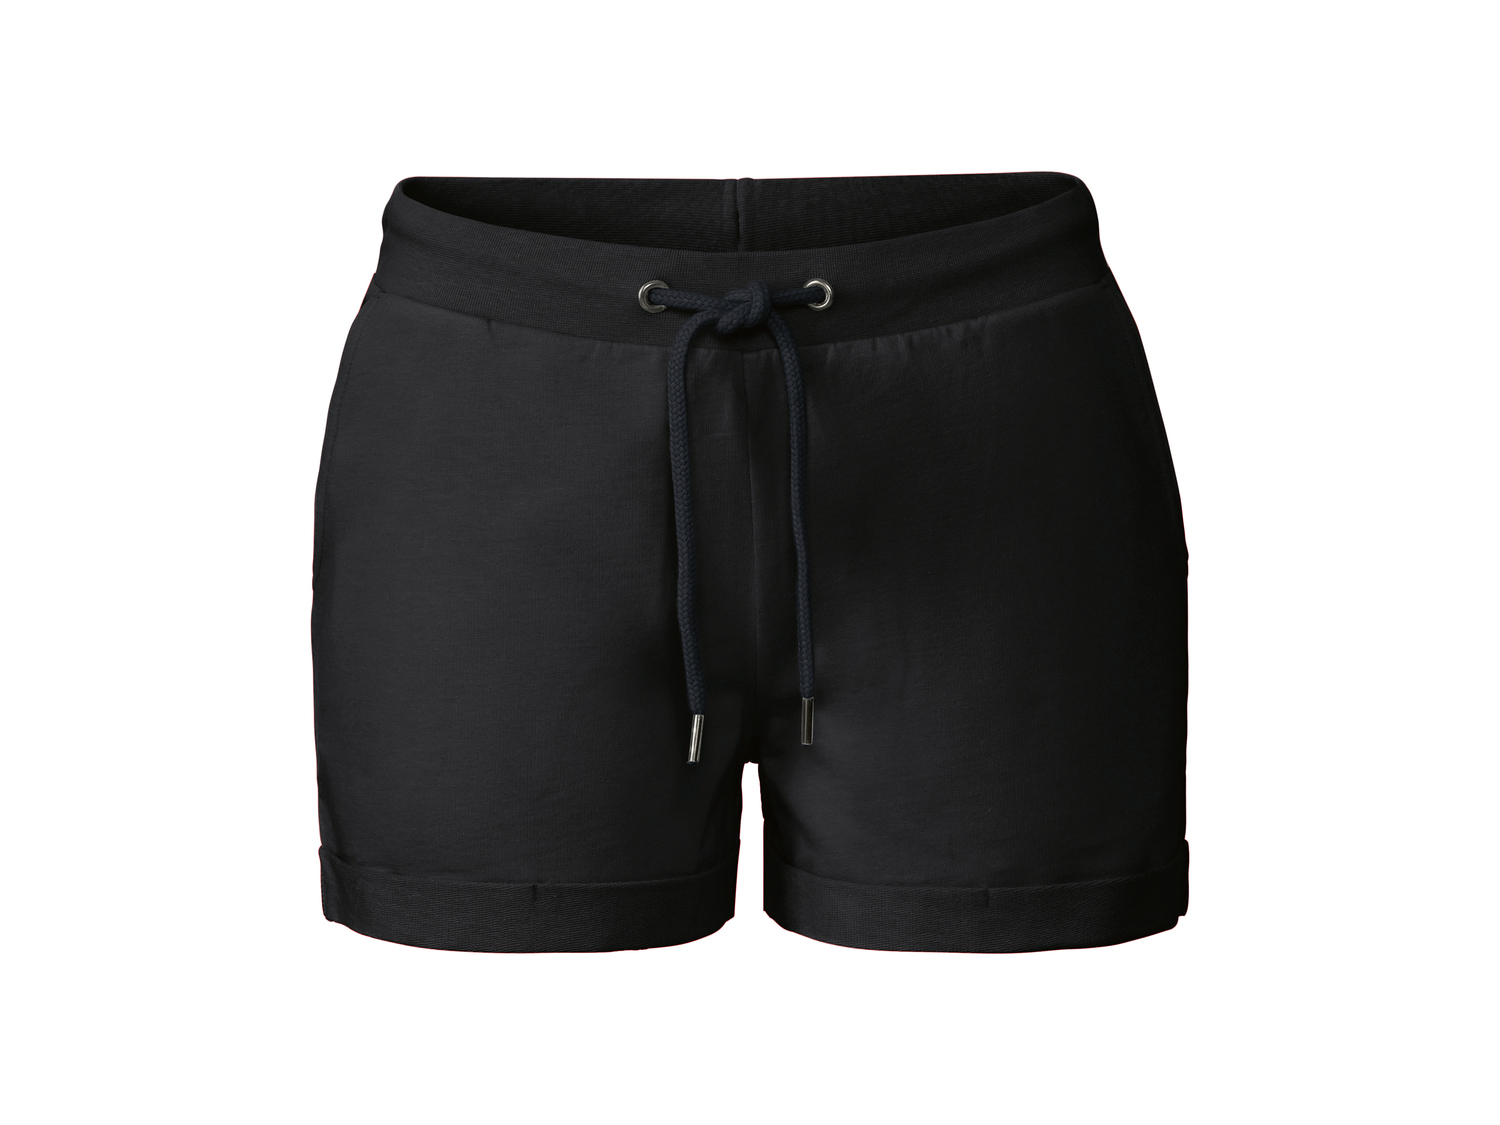 Shorts da donna Esmara, prezzo 4.99 &#8364; 
Misure: S-L
Taglie disponibili

Caratteristiche

- ...